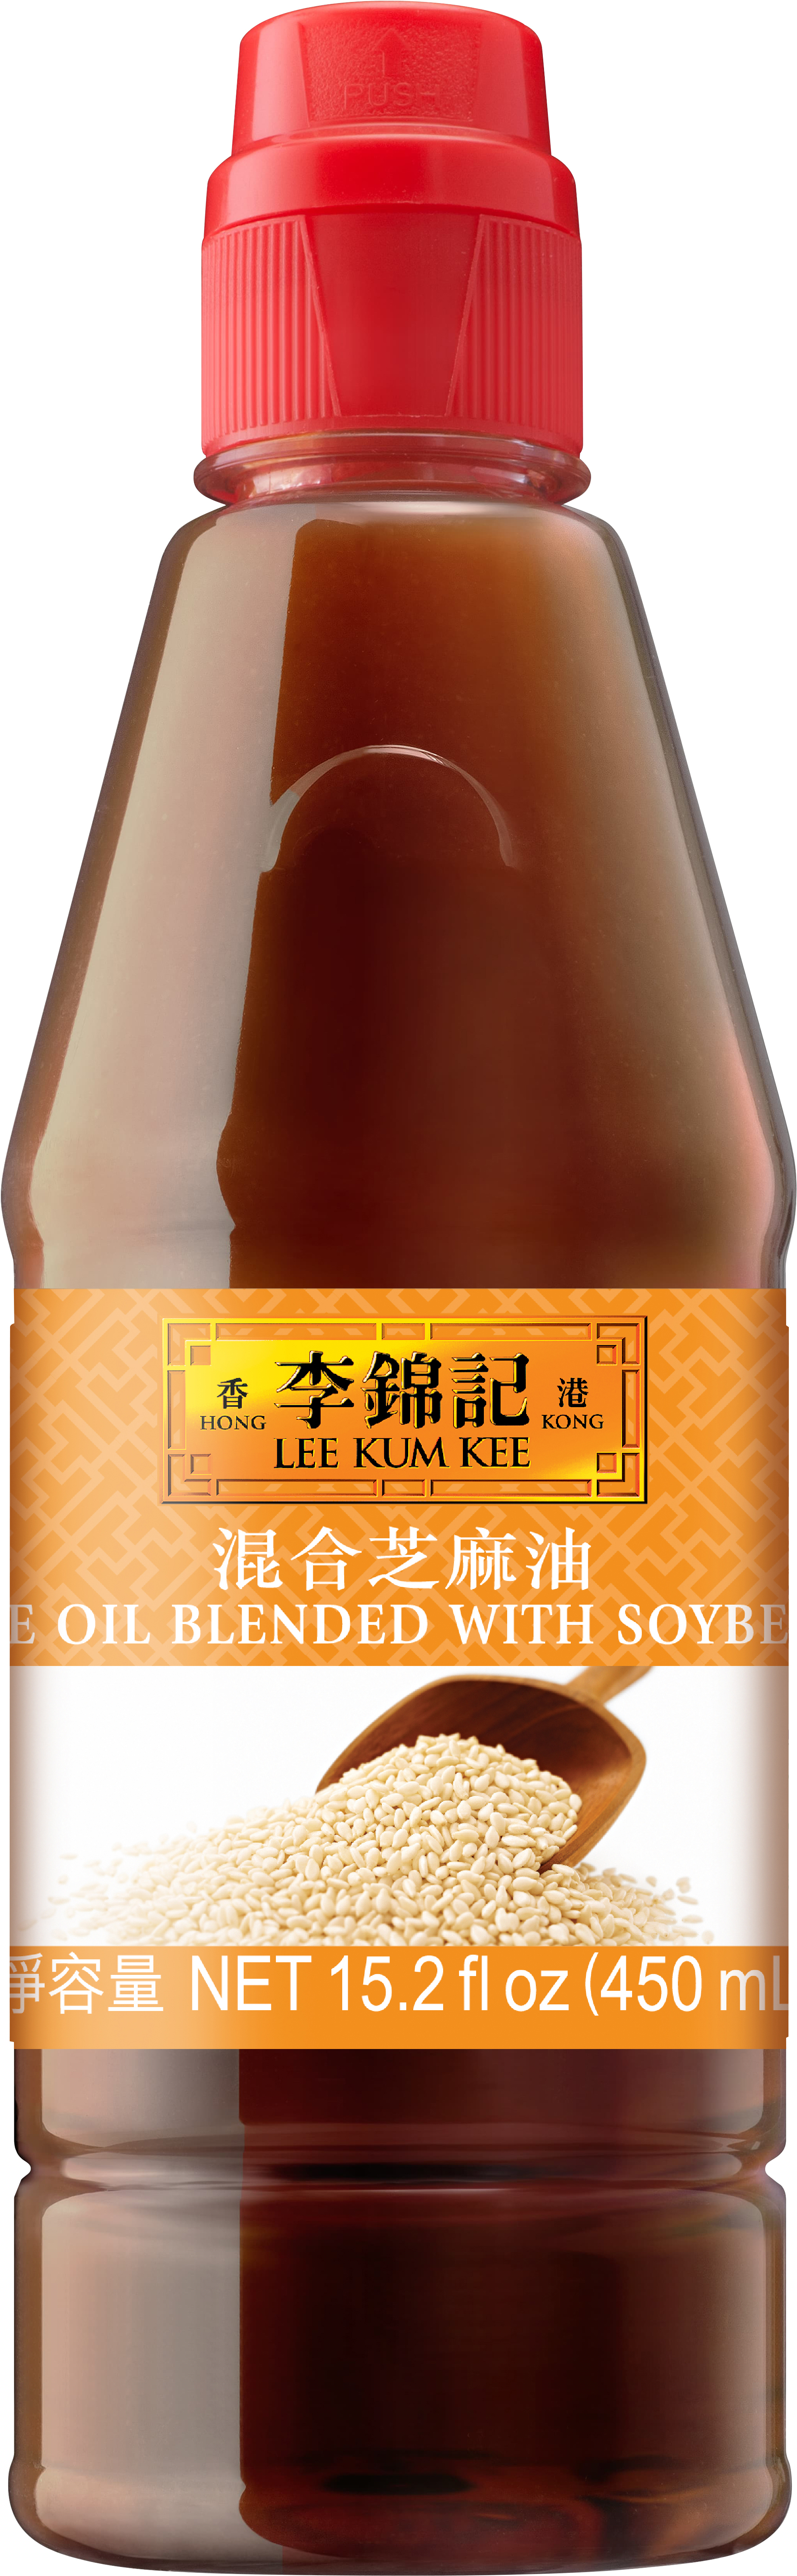 Sesame Oil Blended with Soybean Oil, 15.2 fl oz (450 mL), Bottle